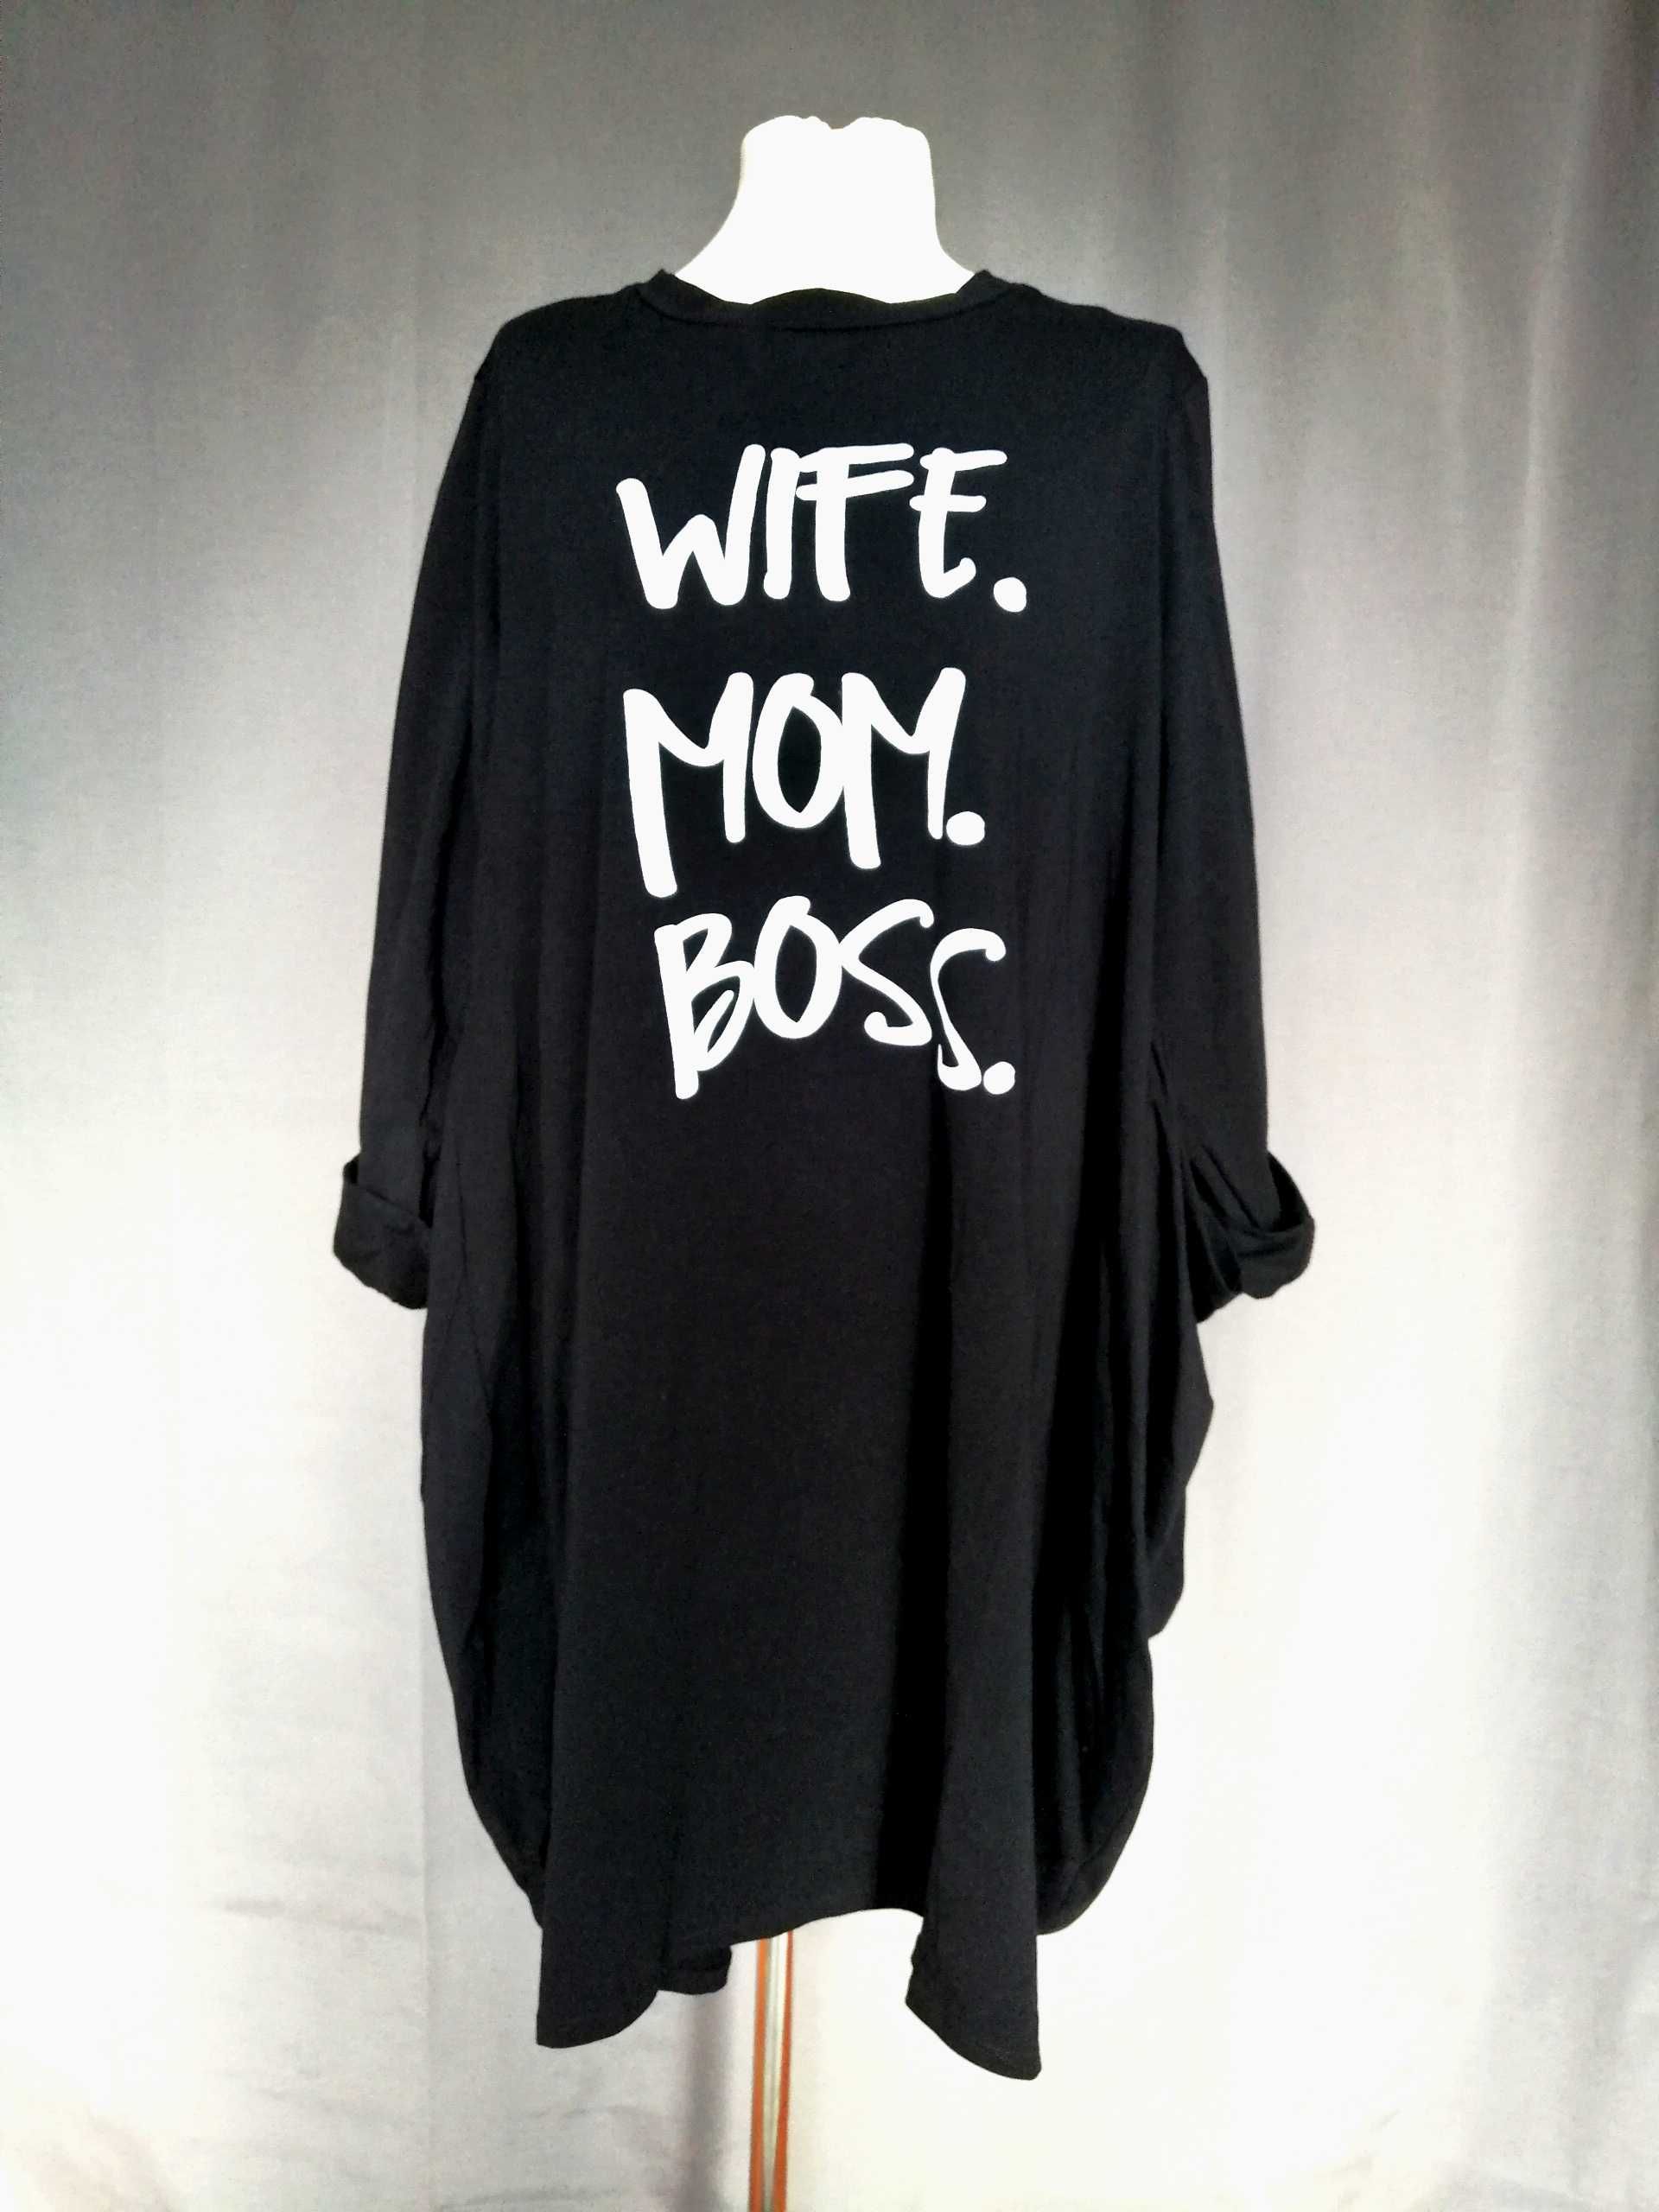 Sukienka z nadrukiem "Wife. Mom. Boss."